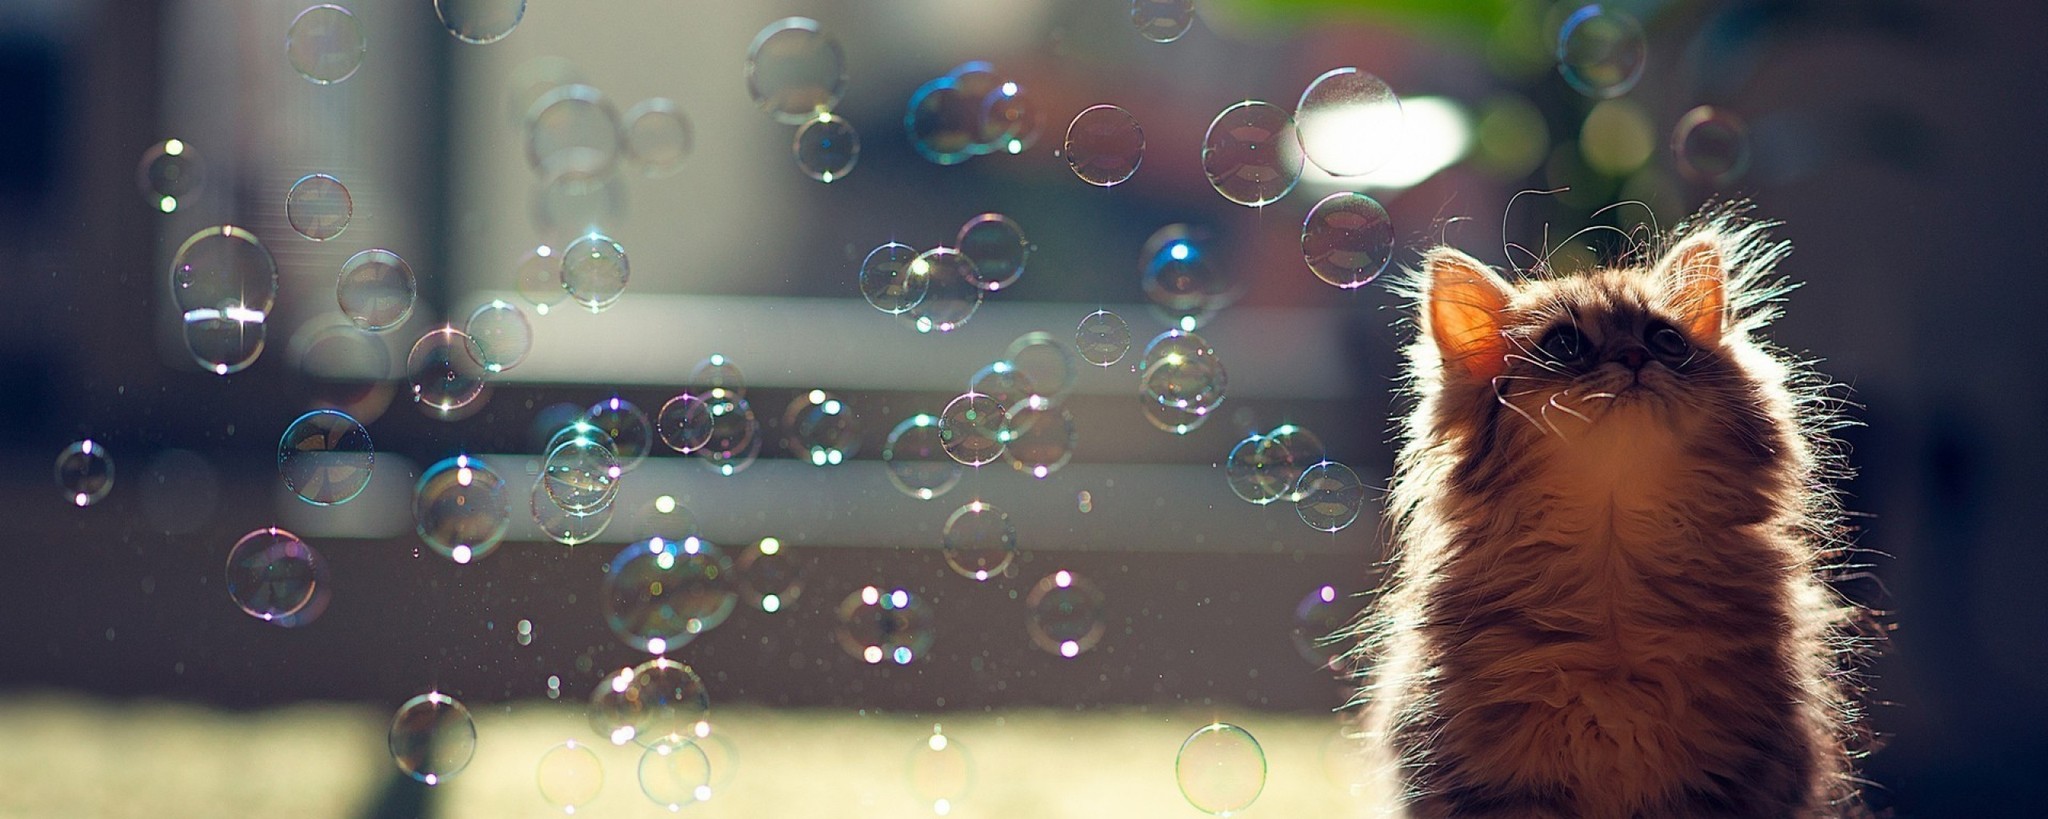 Котенок и мыльные пузыри